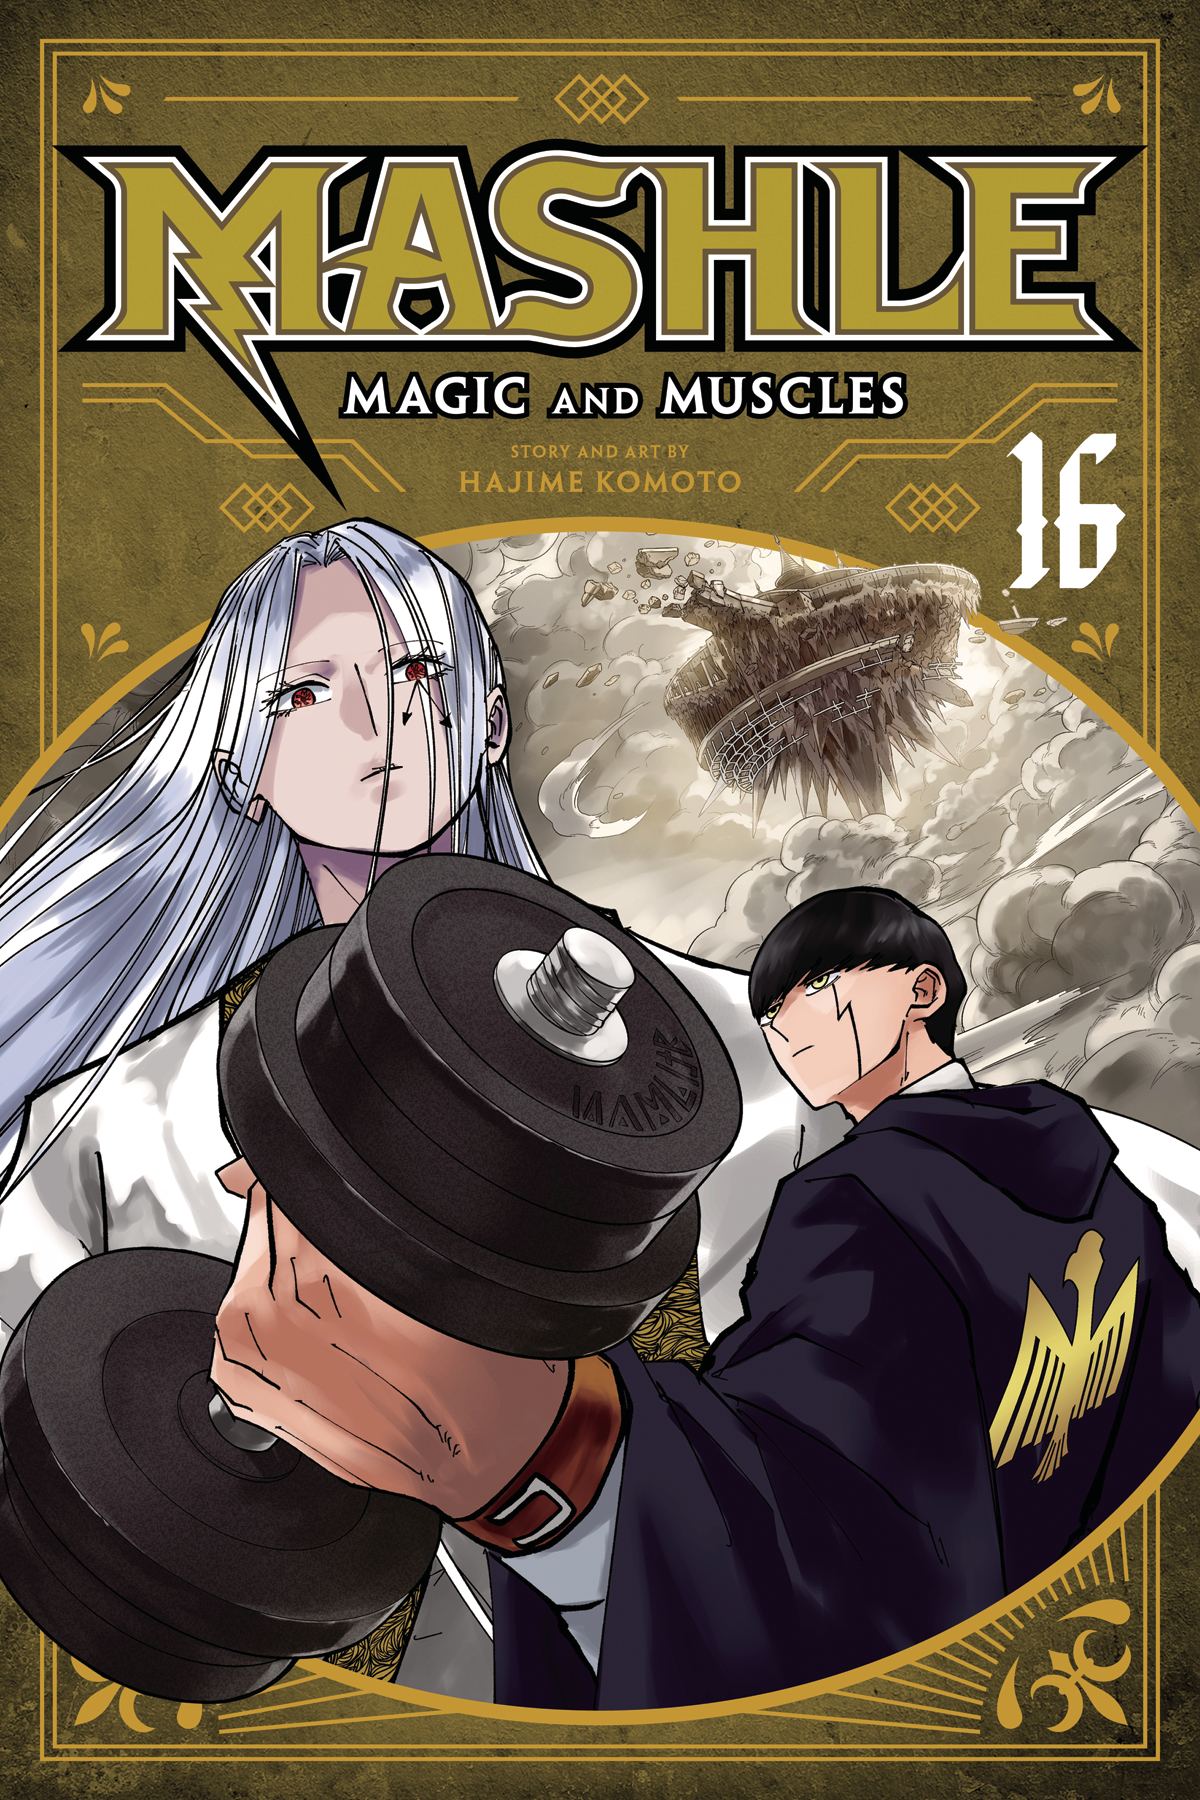 Mashle Magic & Muscles Graphic Novel Volume 16